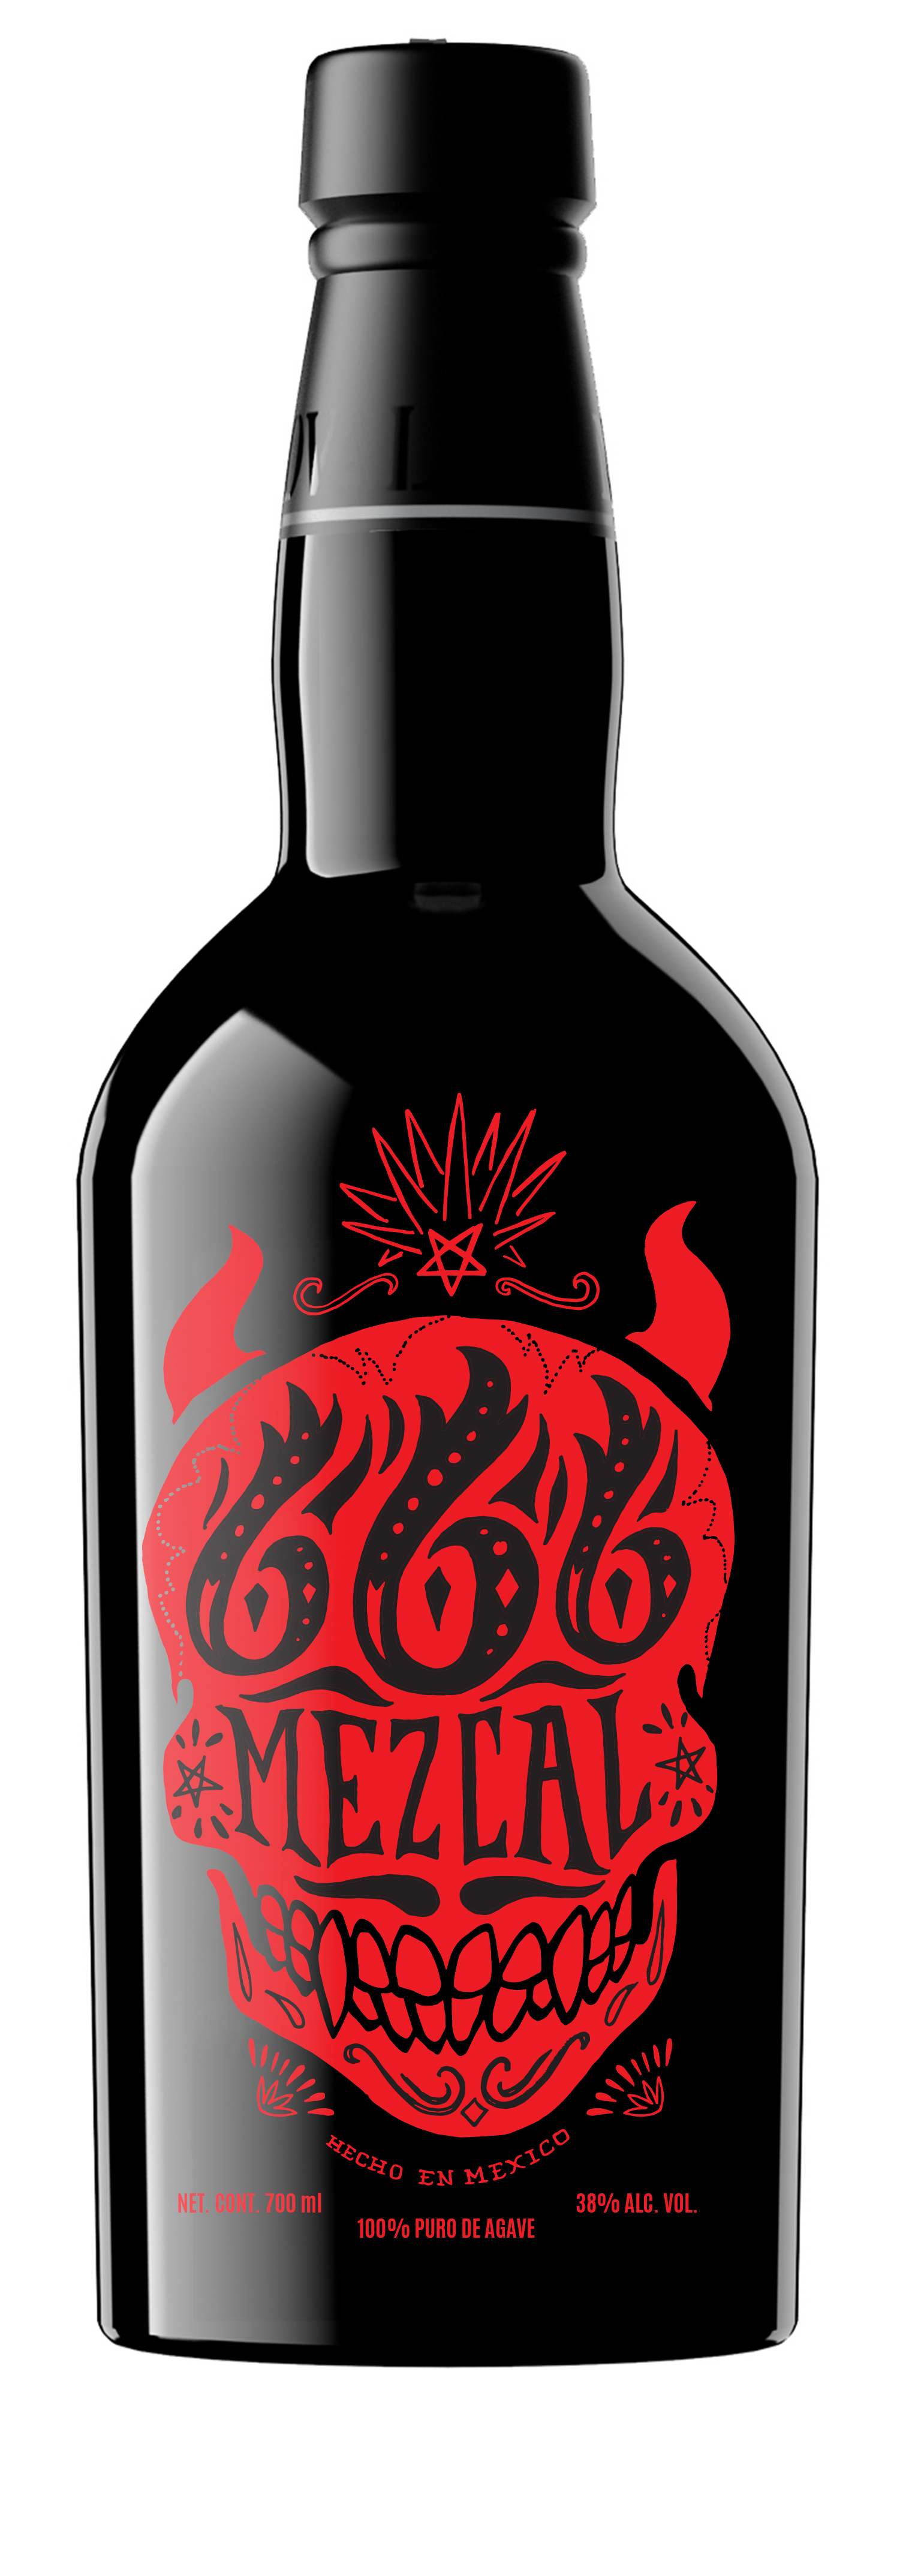 Mezcal 666 Black Bottles2 opt2_0001_all red.jpg